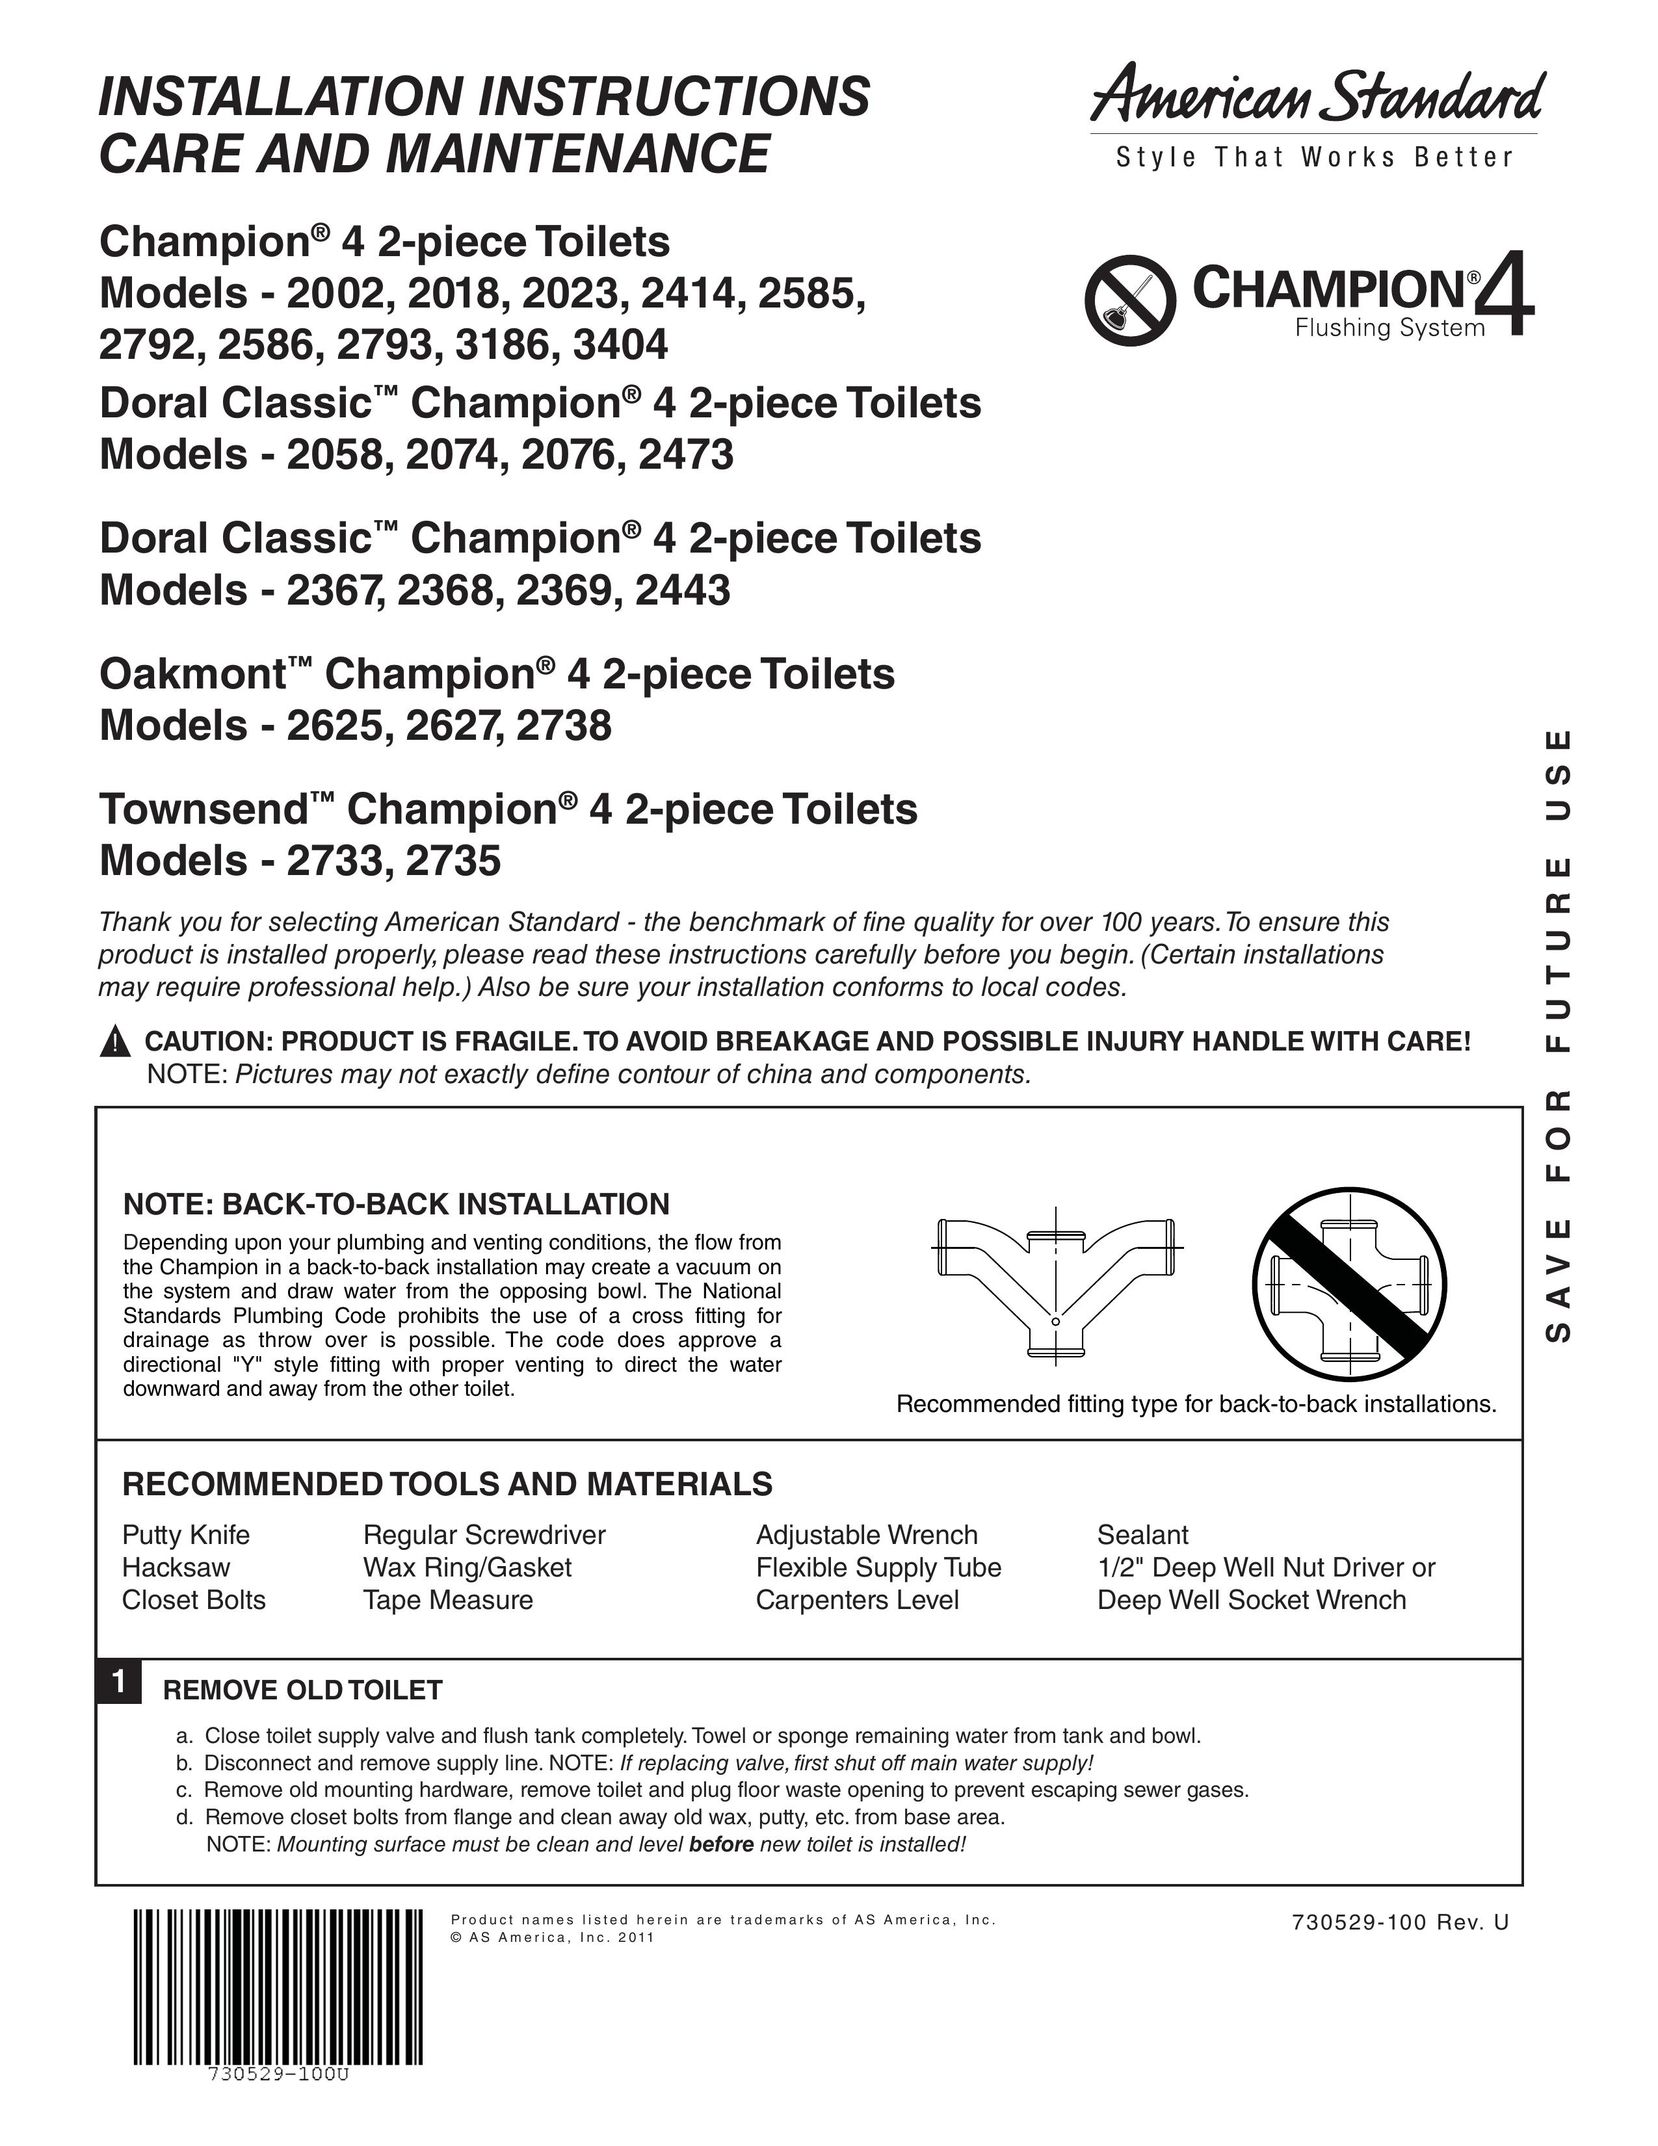 American Standard 2367 Plumbing Product User Manual